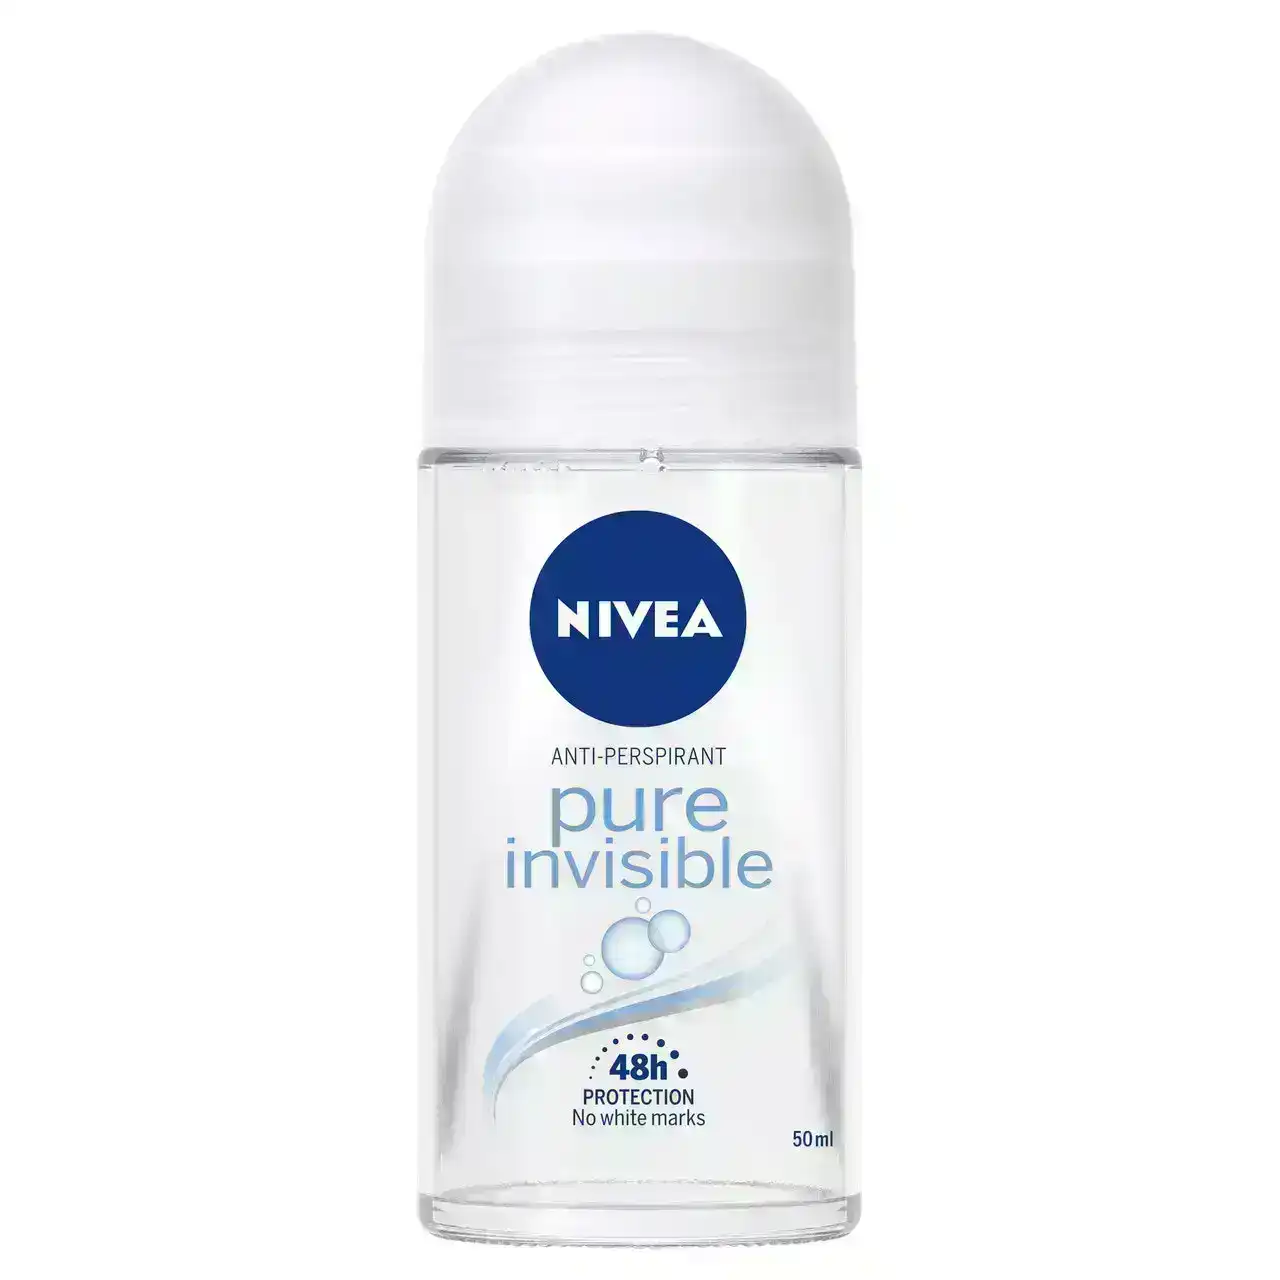 Nivea Pure Invisible Anti-Perspirant Roll-on Deodorant 50ml